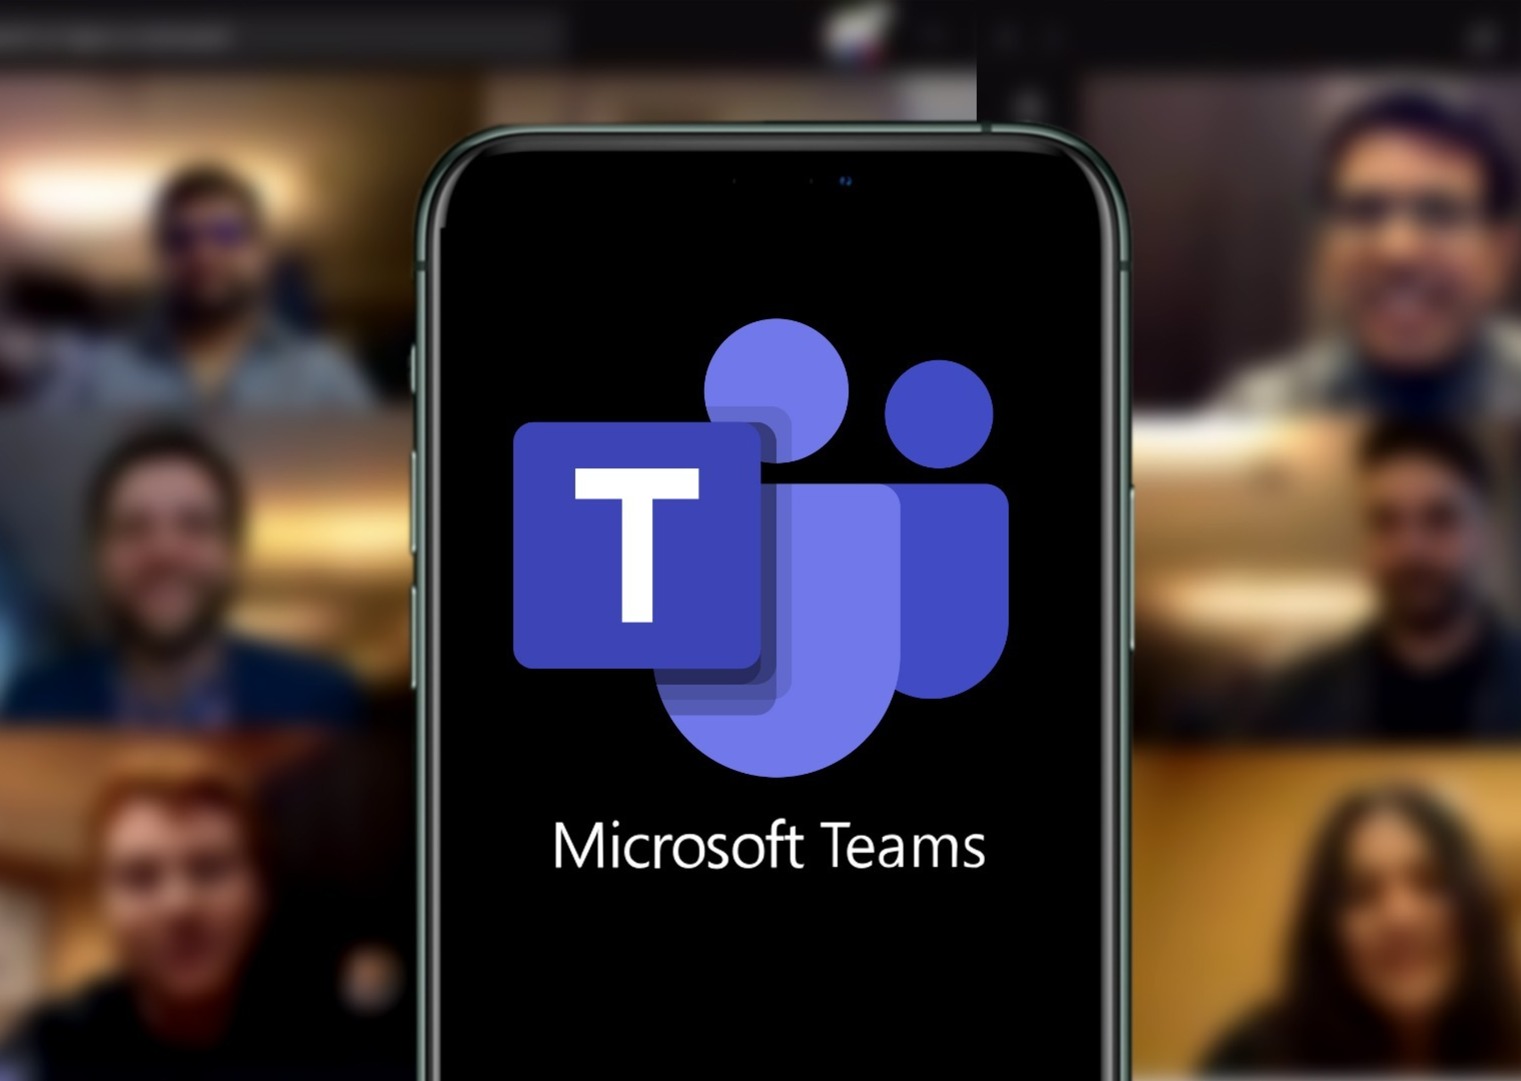 Microsoft Teams on phone